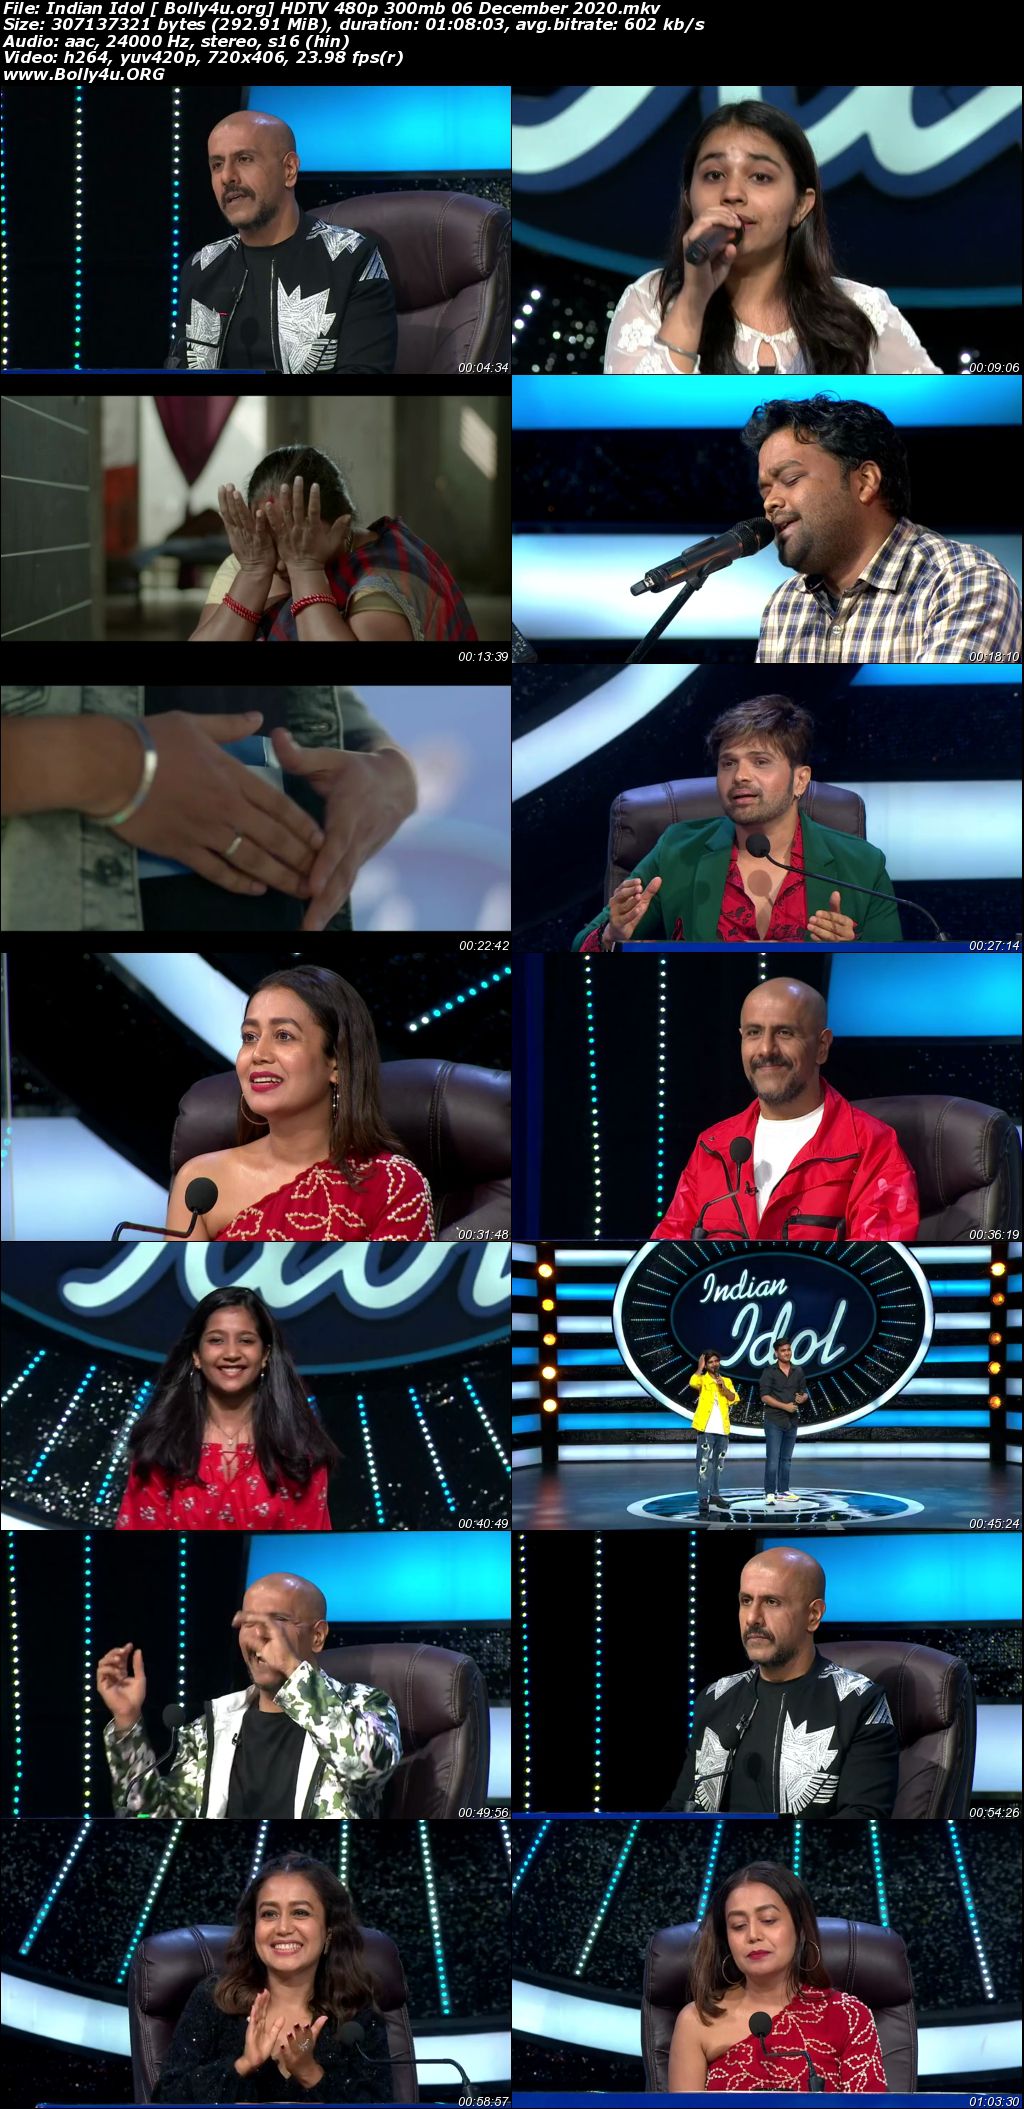 Indian Idol HDTV 480p 300mb 06 December 2020 Download